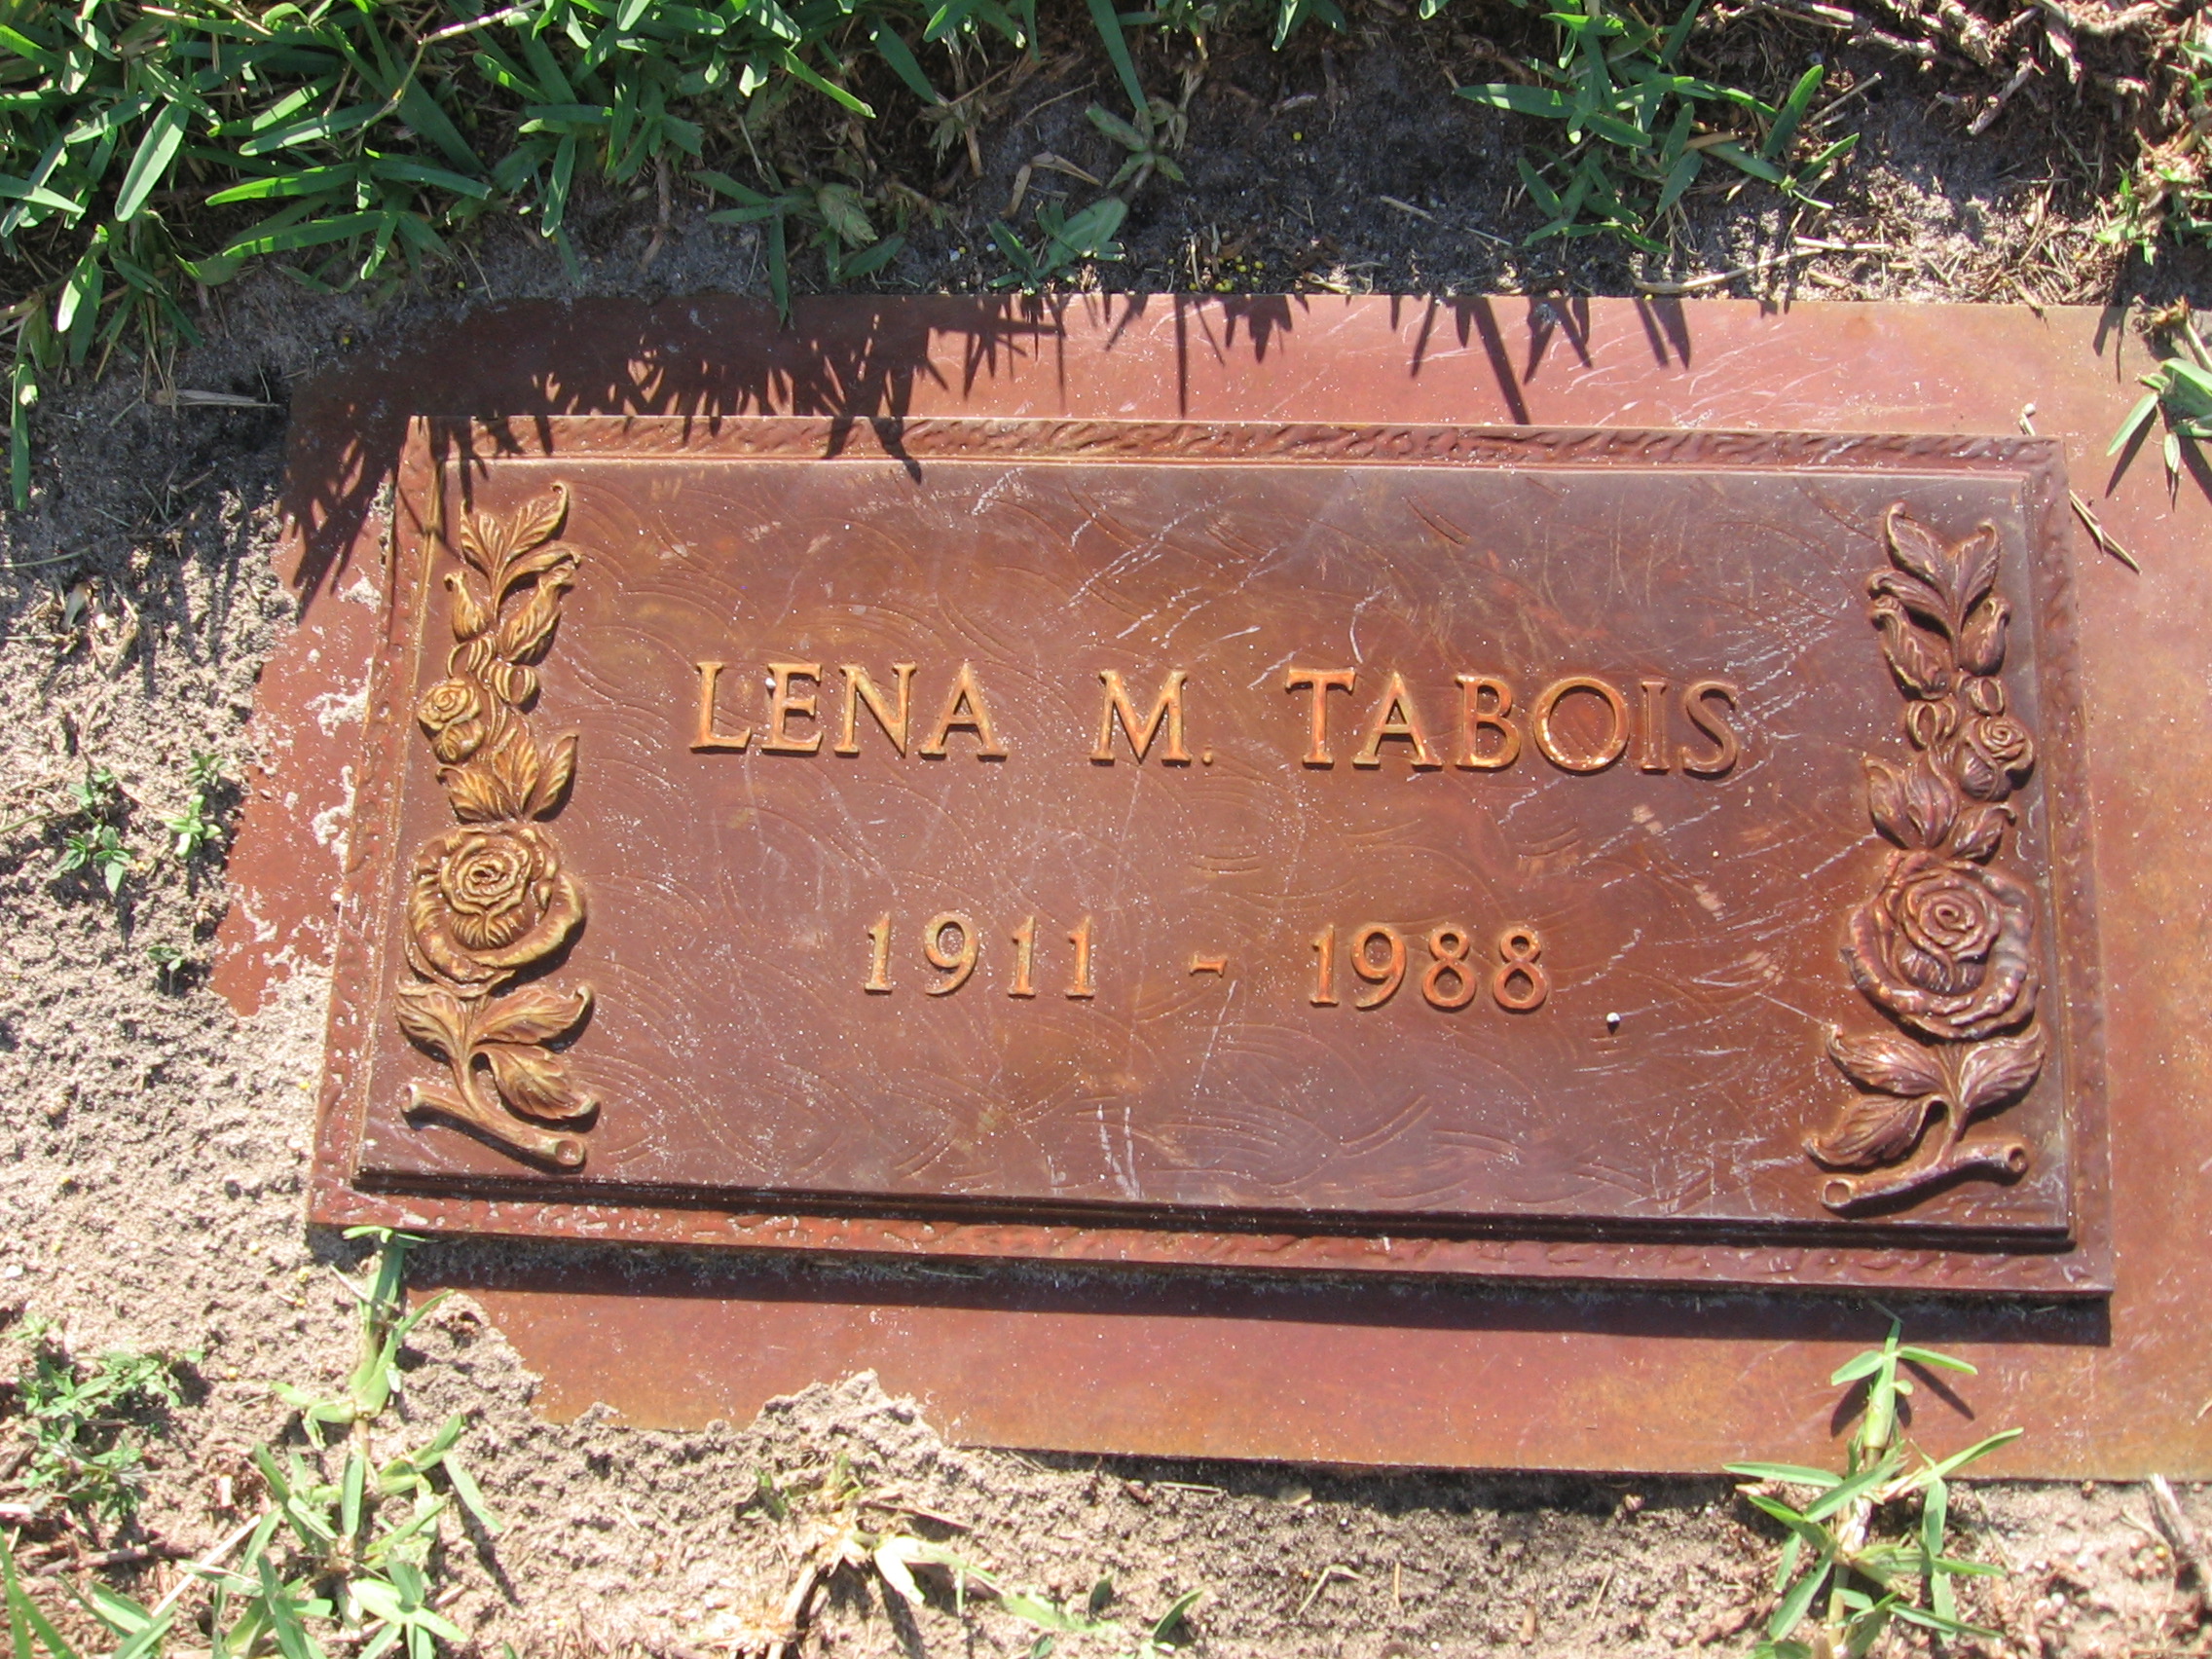 Lena M Tabois